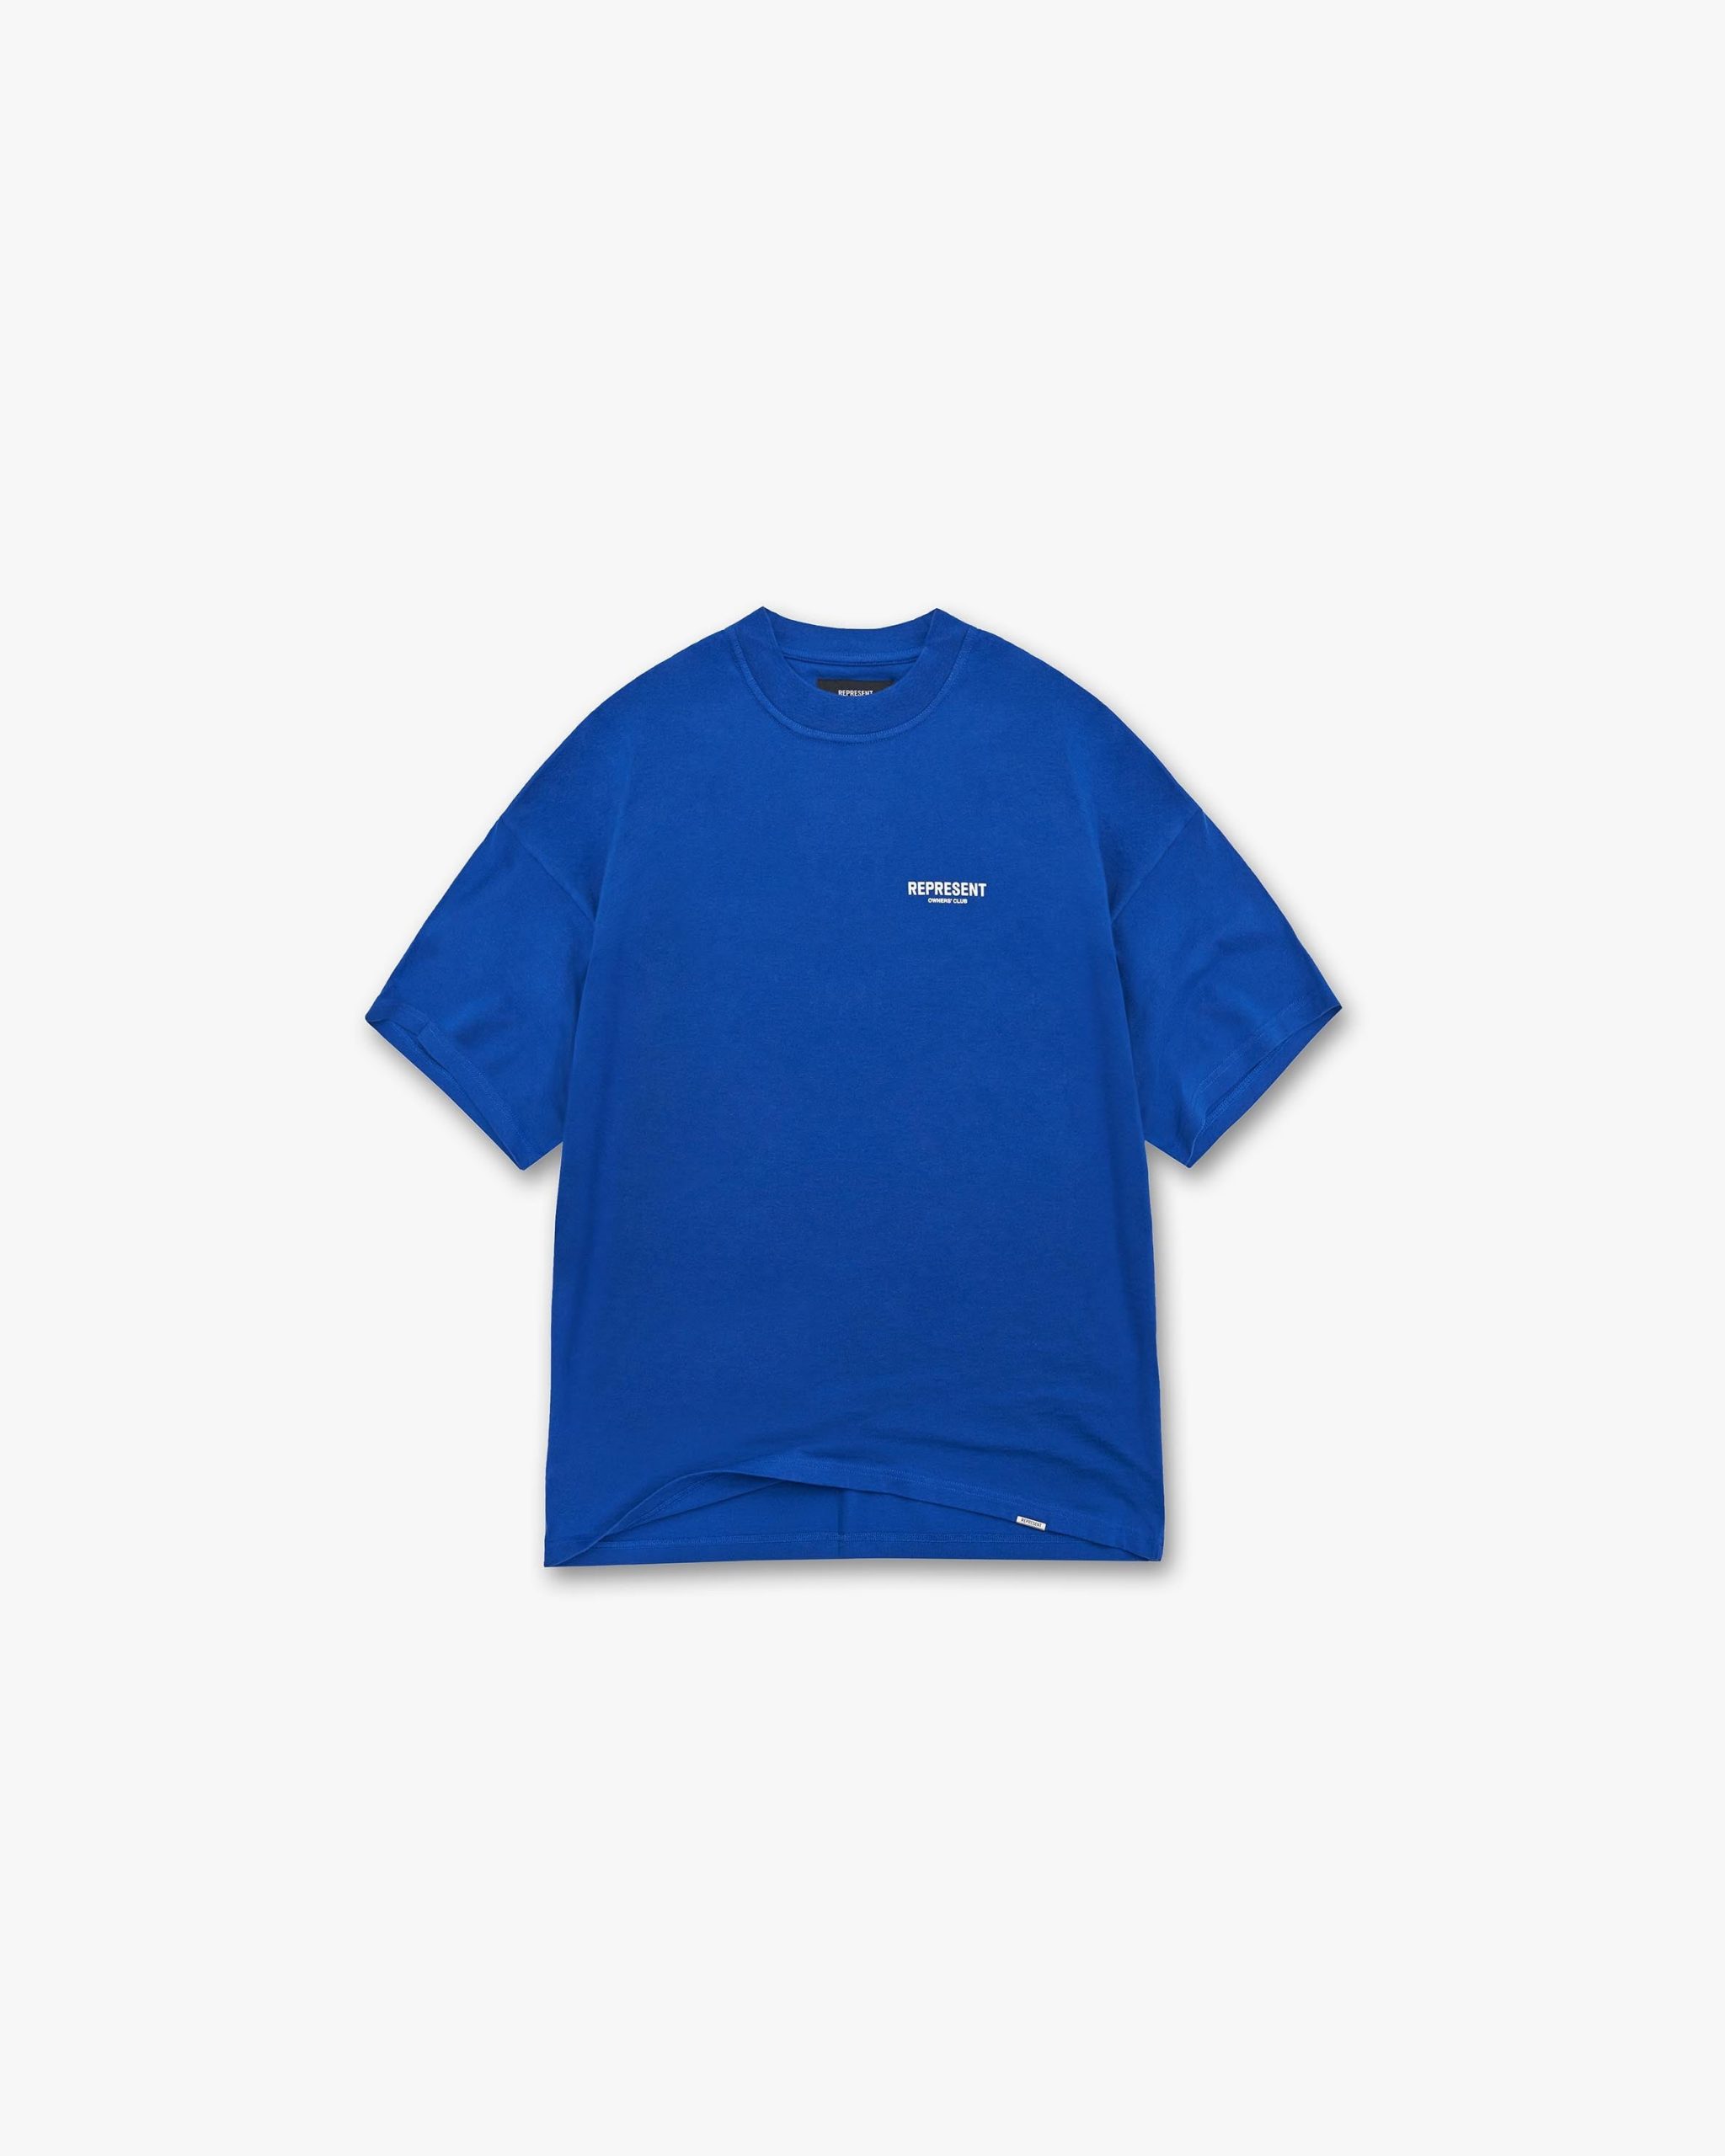 Represent Represent Owners Club T-Shirt - Cobalt - Represemt Clo ...